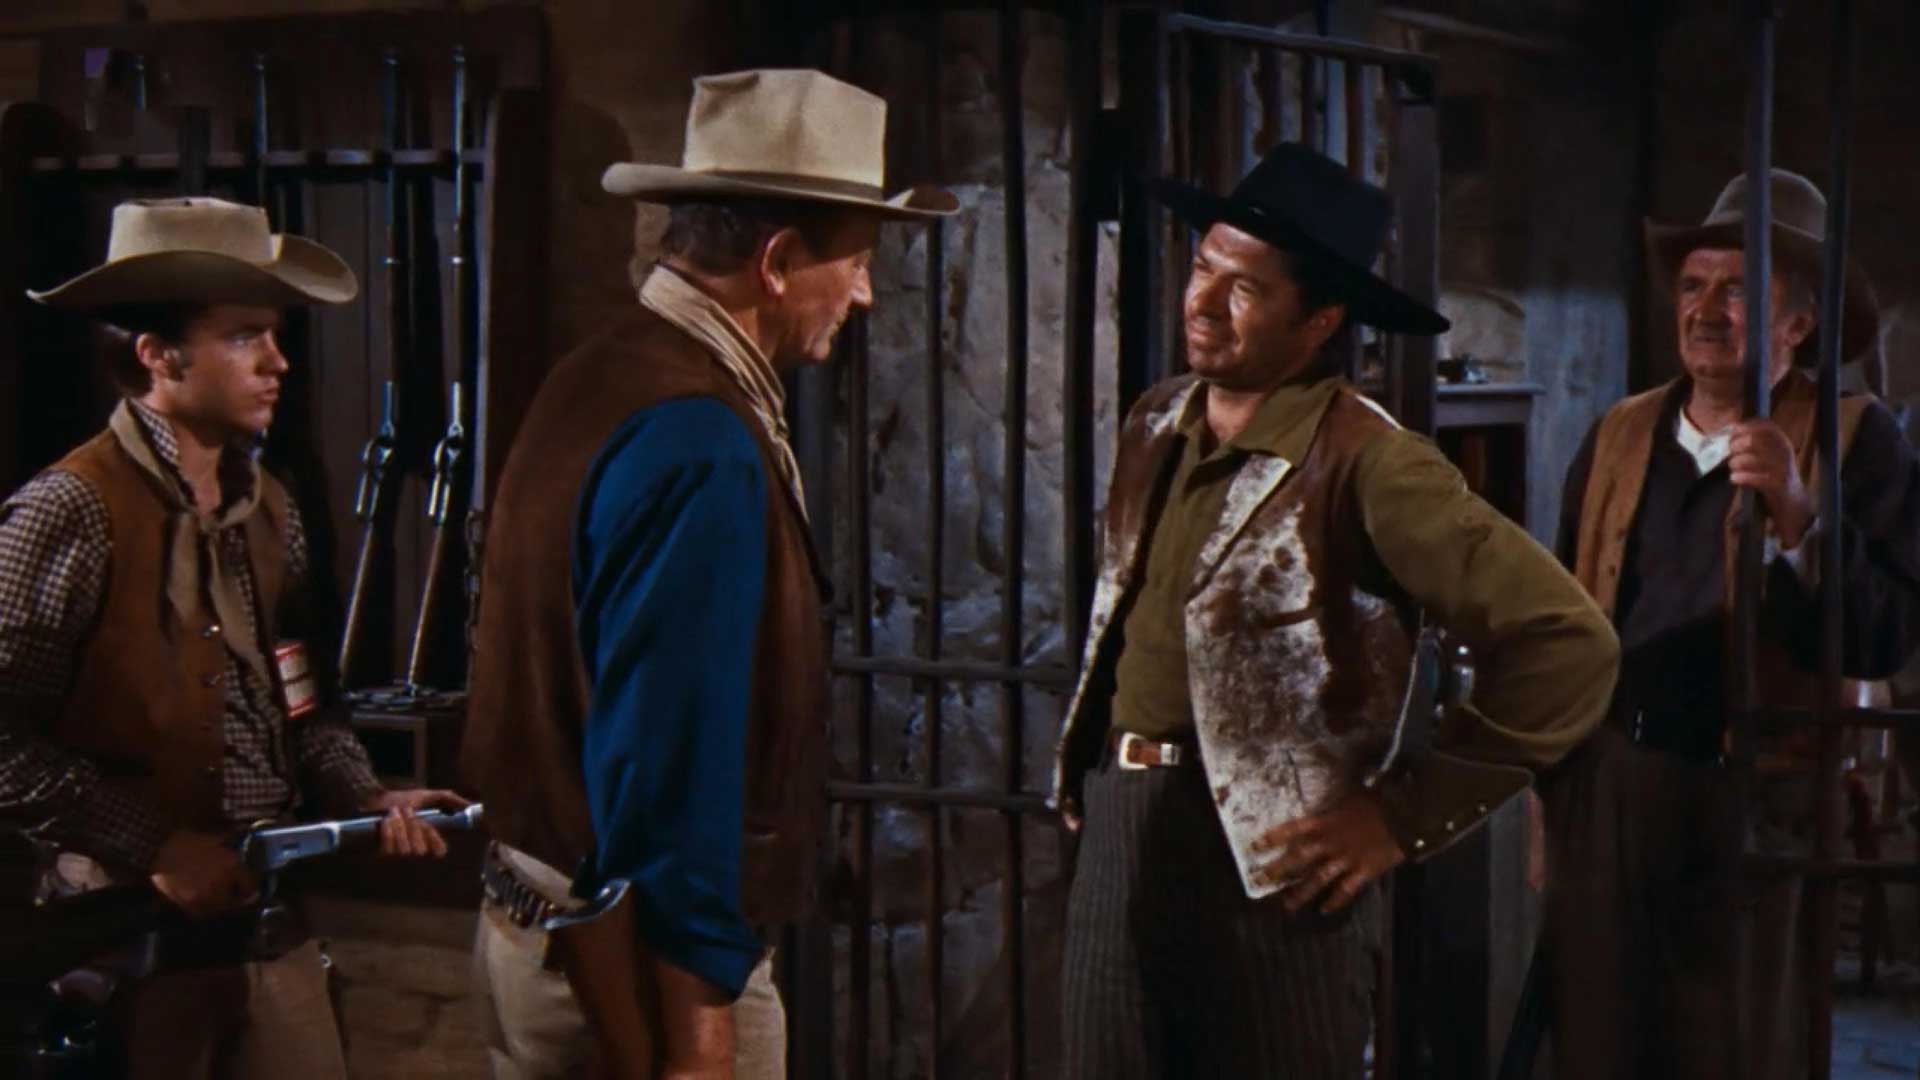 فیلم وسترن Rio Bravo و گفت و گوی چند تفنگ دار با یکدیگر در غرب وحشی